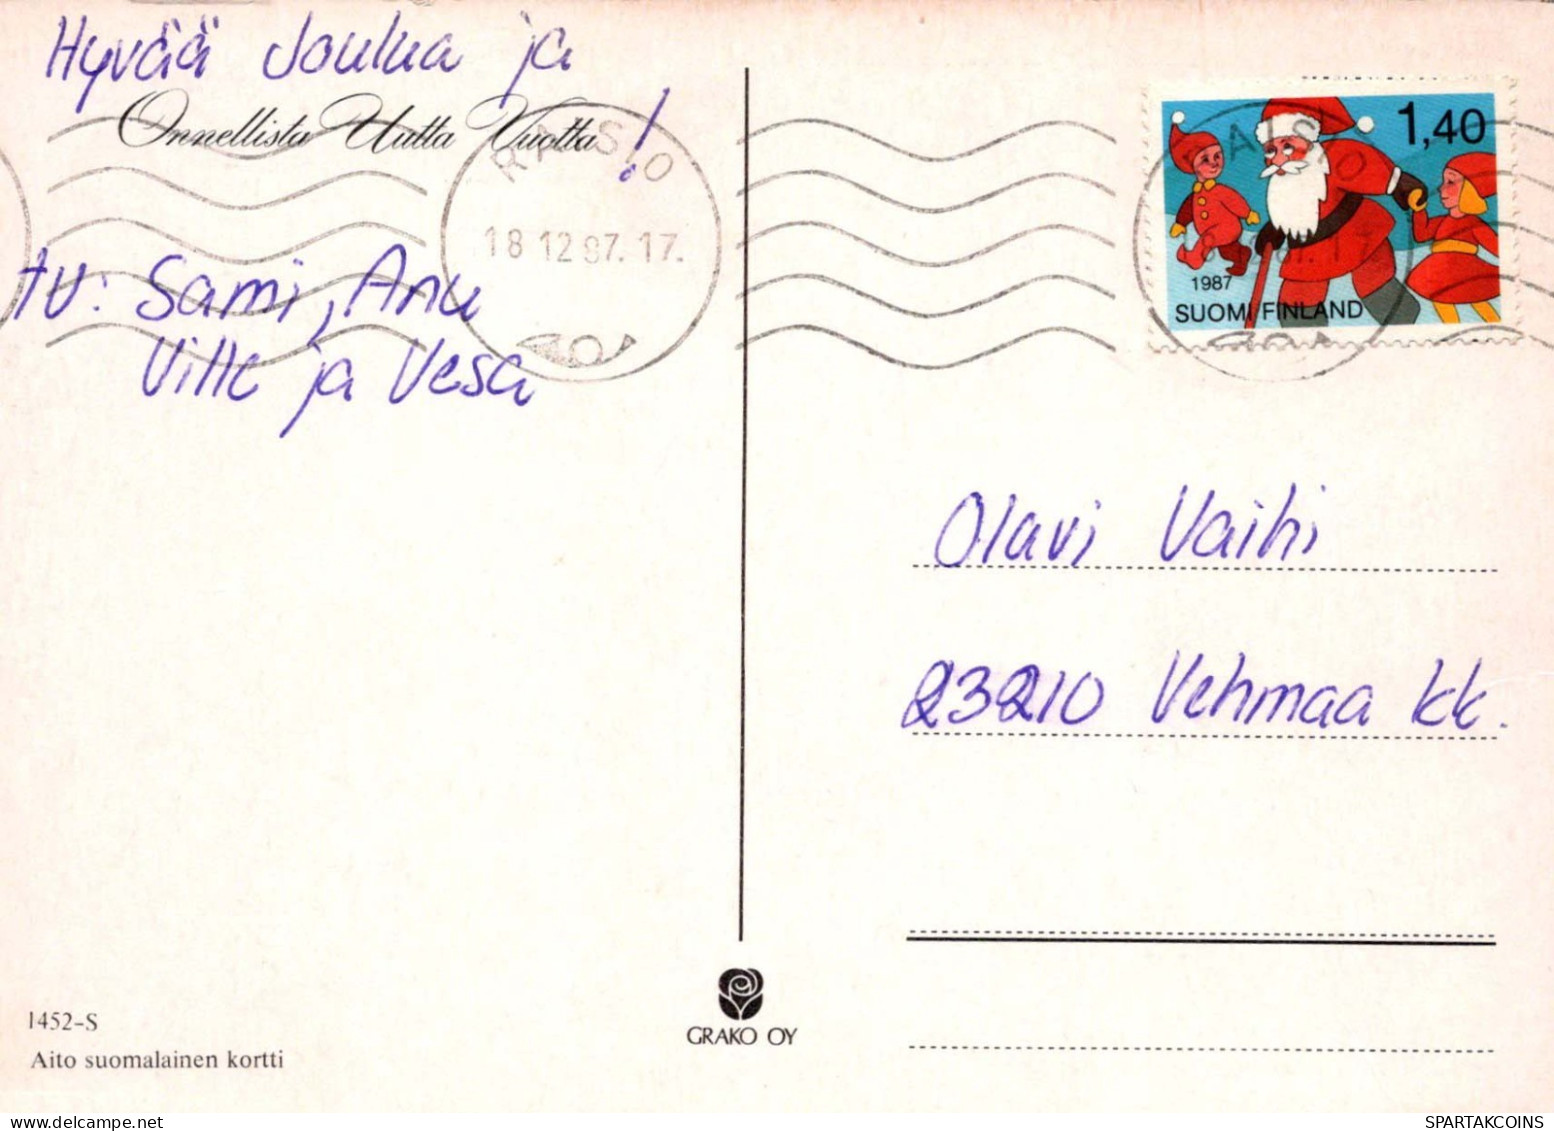 Buon Anno Natale BAMBINO CAVALLOSHOE Vintage Cartolina CPSM #PAU066.IT - New Year